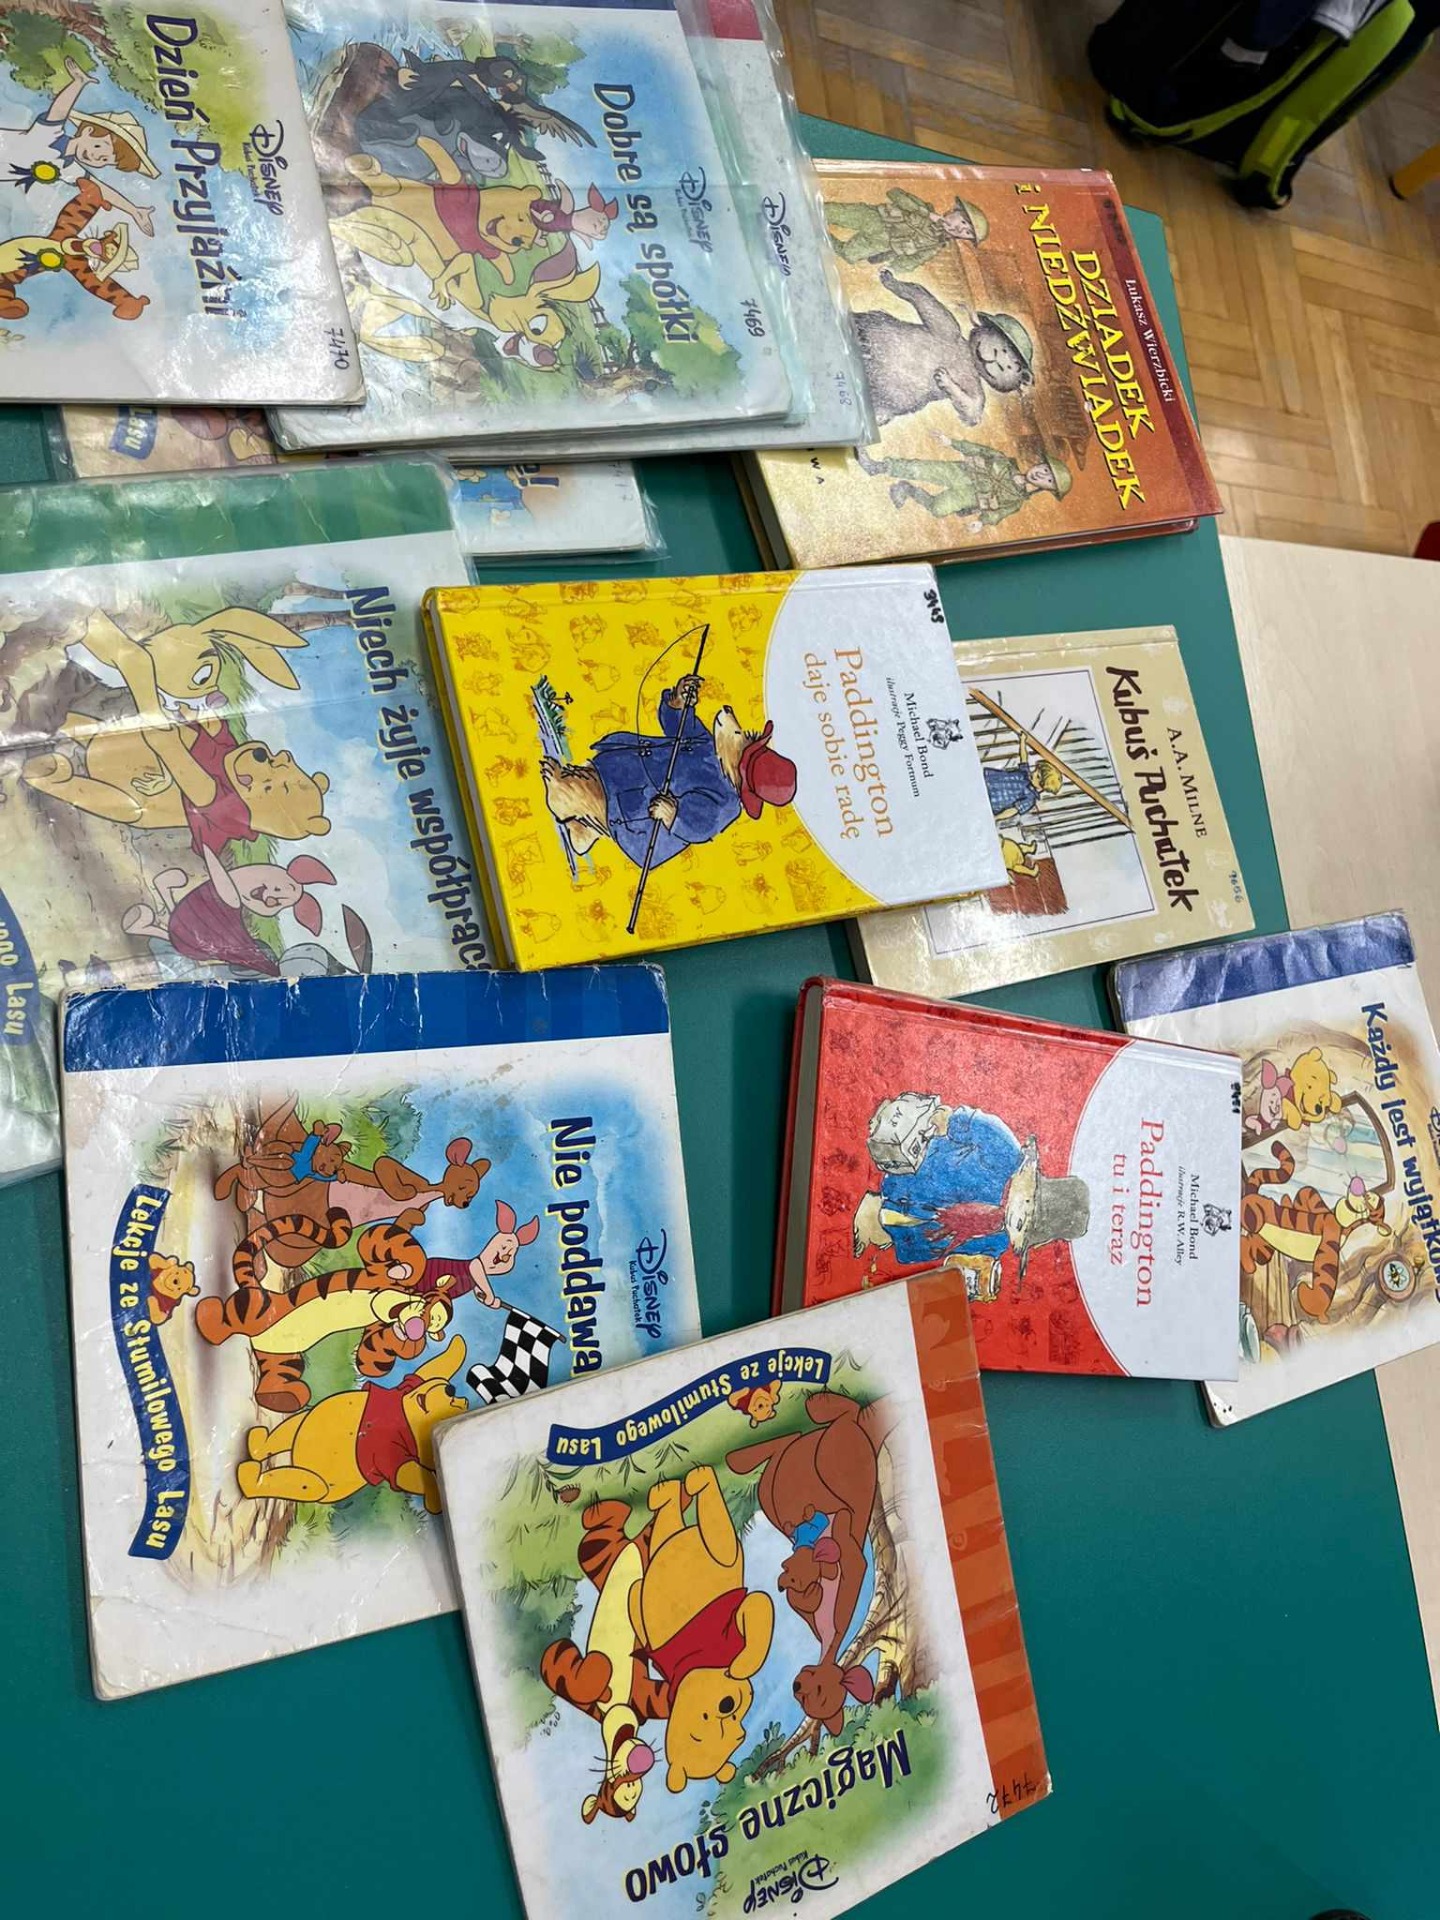 Na stoliku leżą kolorowe książki, których bohaterami są misie: Kubuś Puchatek, Paddington, Kubuś Puchatek i przyjaciele, Dziadek i Niedźwiadek.